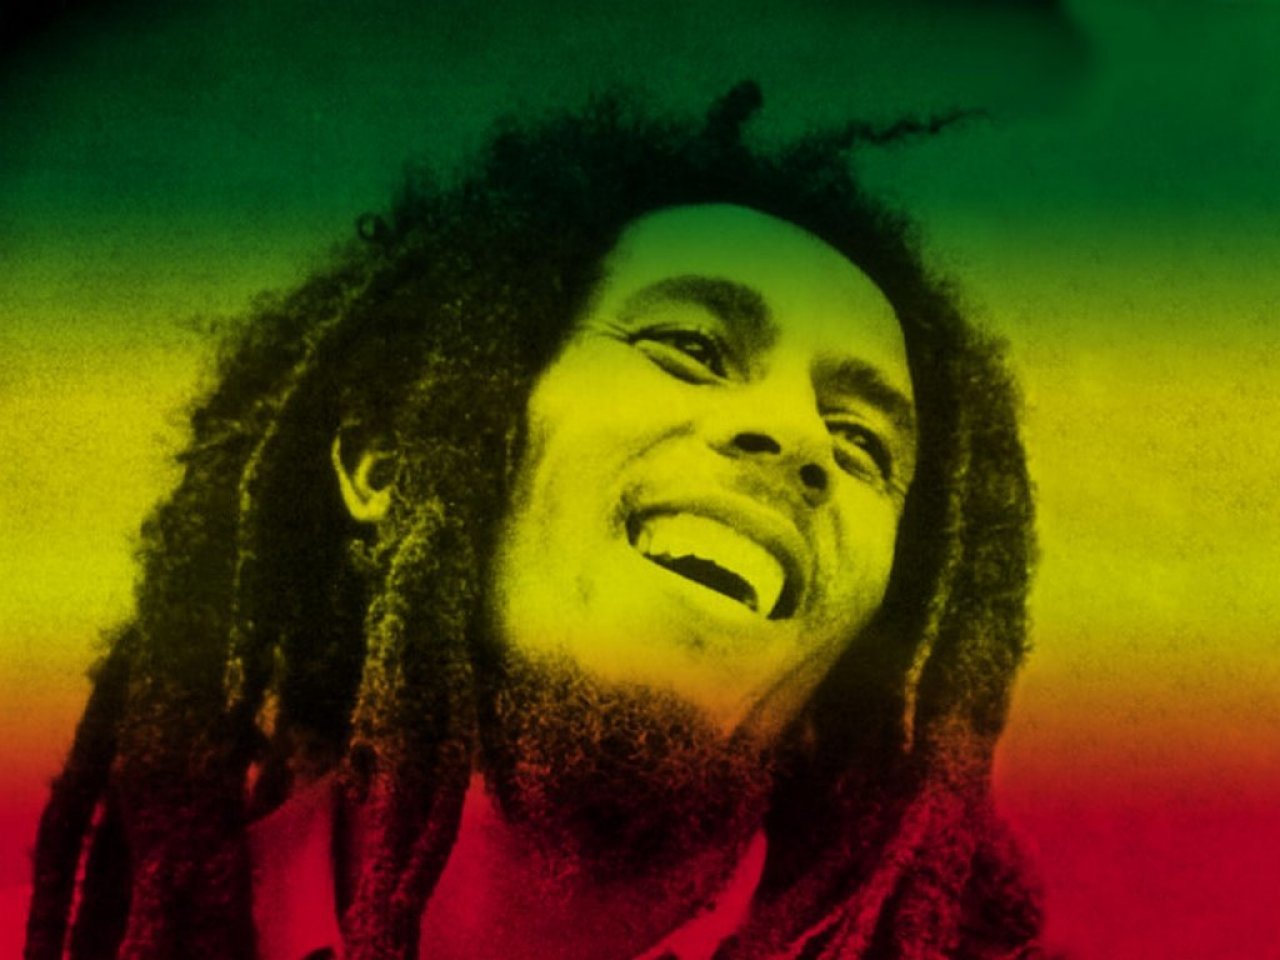 Скачать обои Боб Марли (Bob Marley) на телефон бесплатно